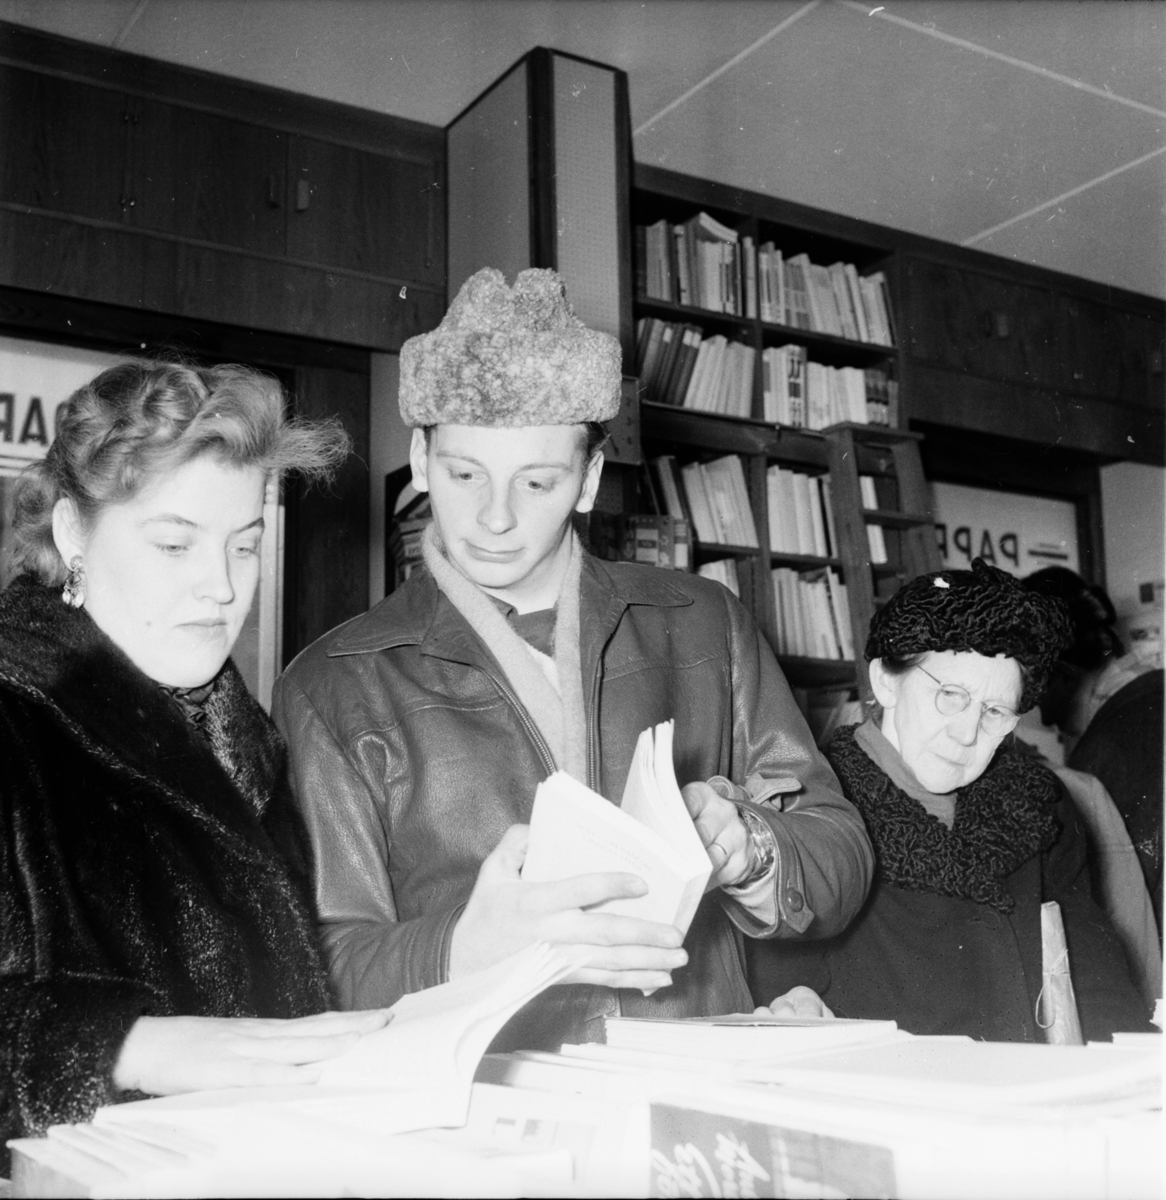 Realisation i Helins bokhandel.
26/2 1956